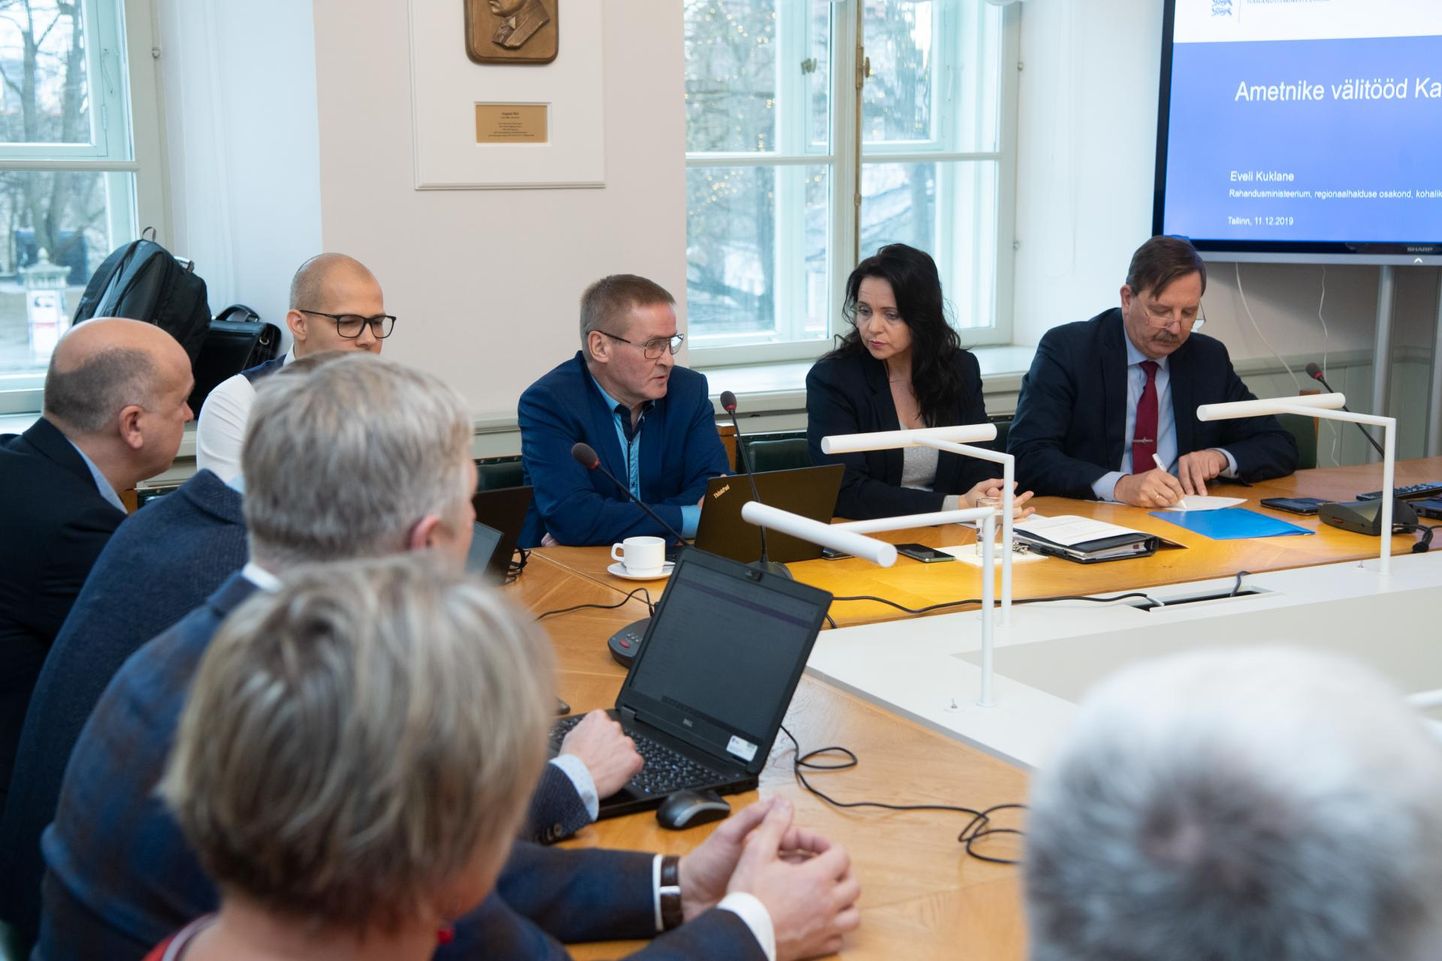 Kagu-Eesti toetusrühma kohtumisel otsiti lahendusi kaalukaimatele probleemidele.